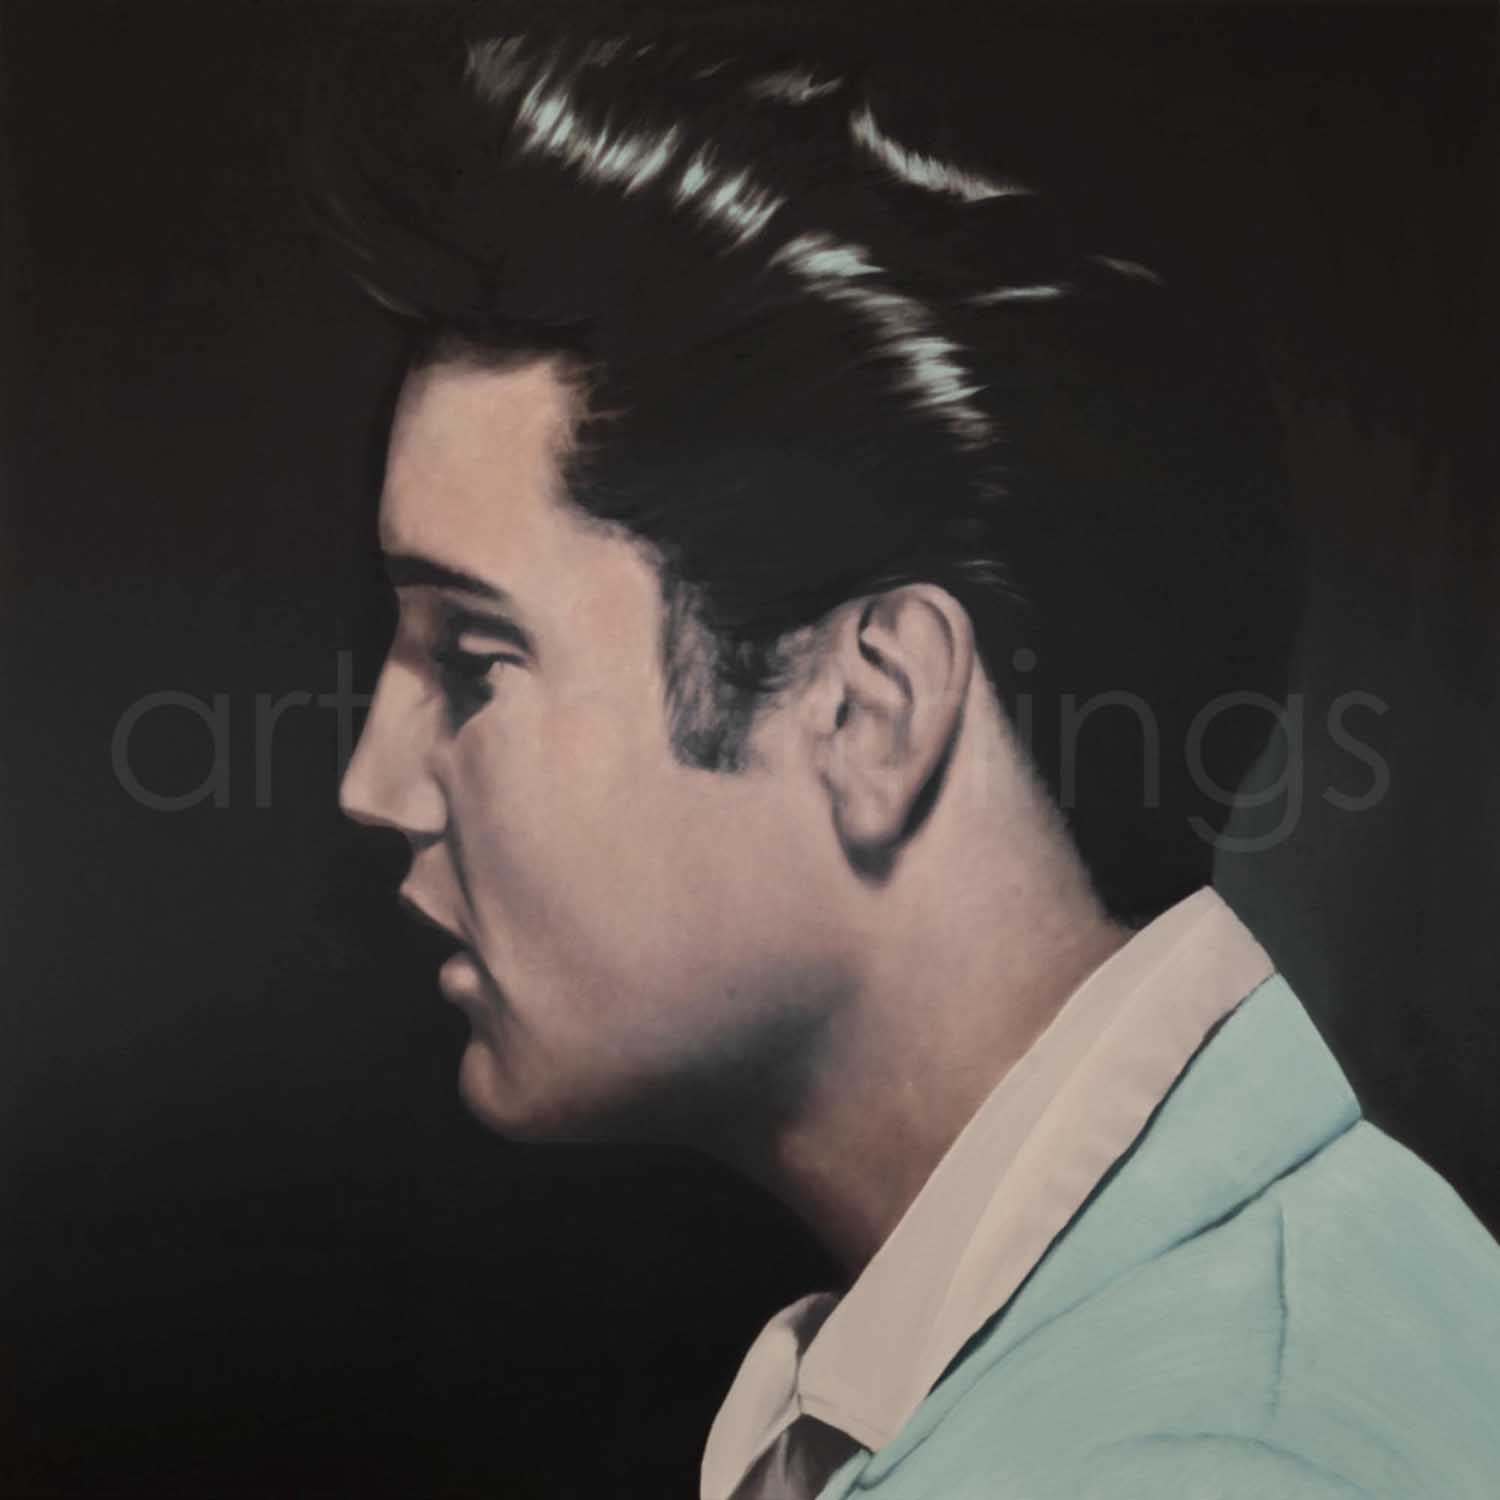 Elvis Presley Print